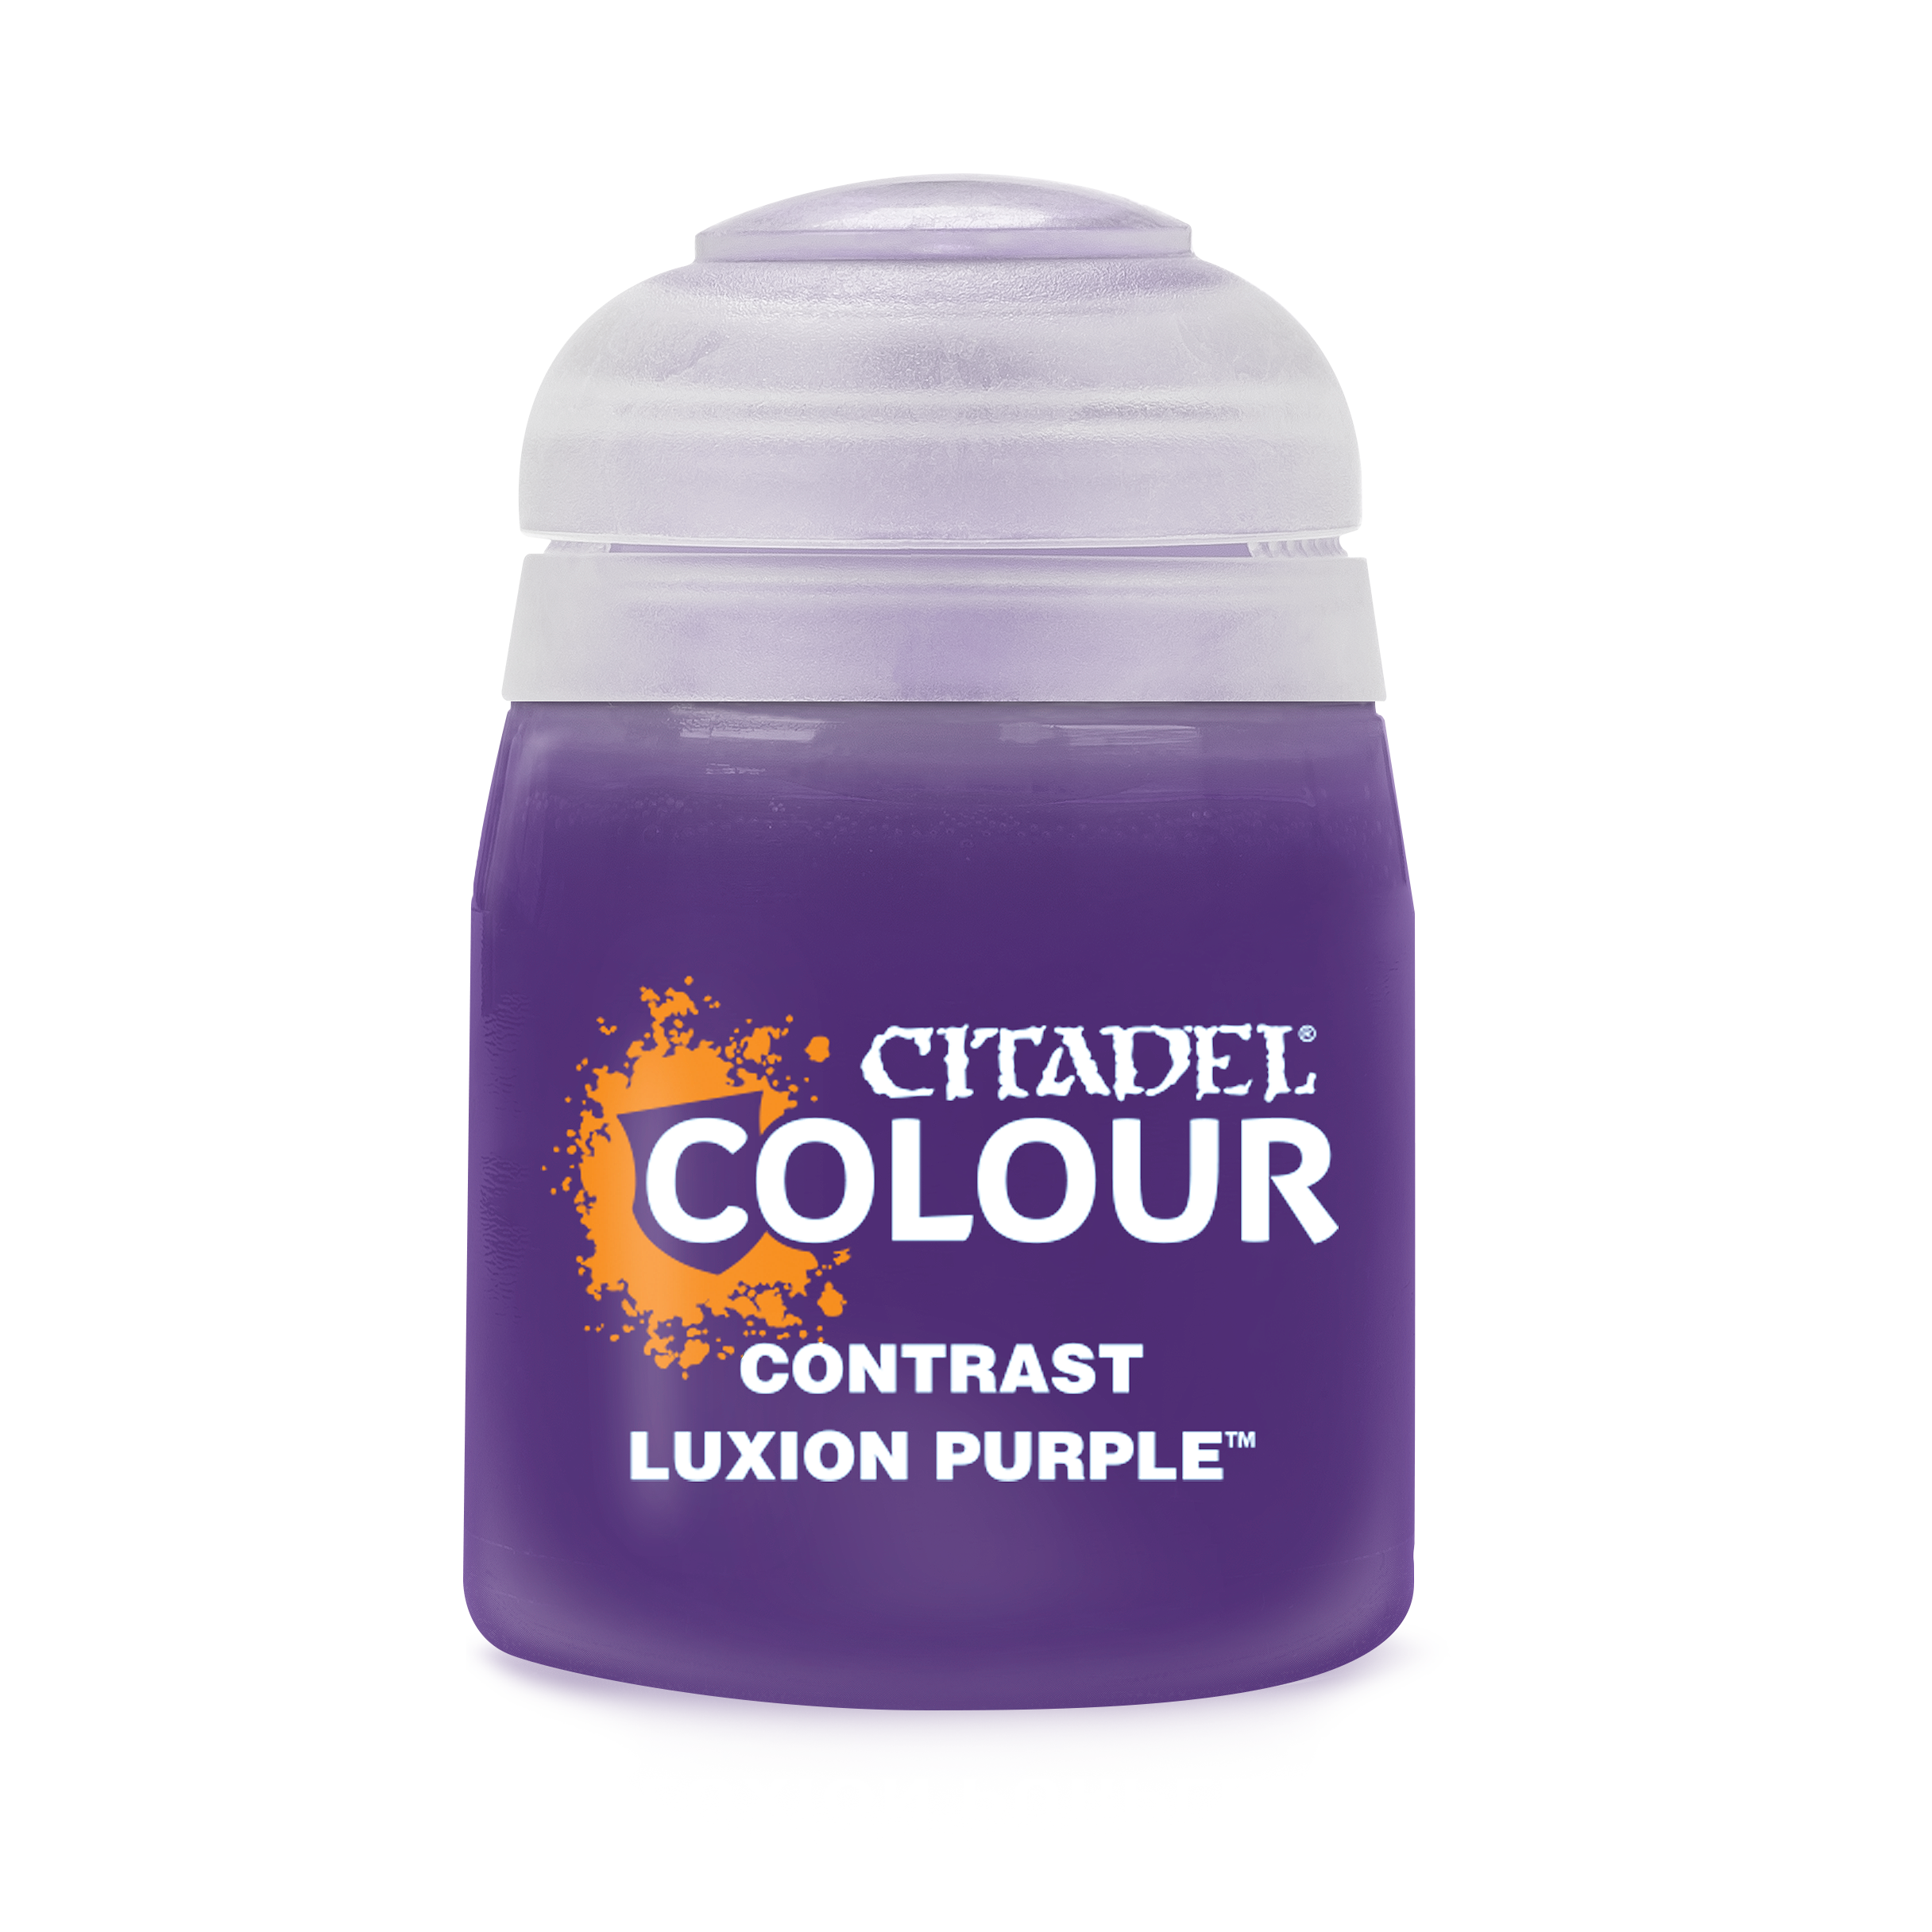 Luxion Purple - Citadel Contrast Colour